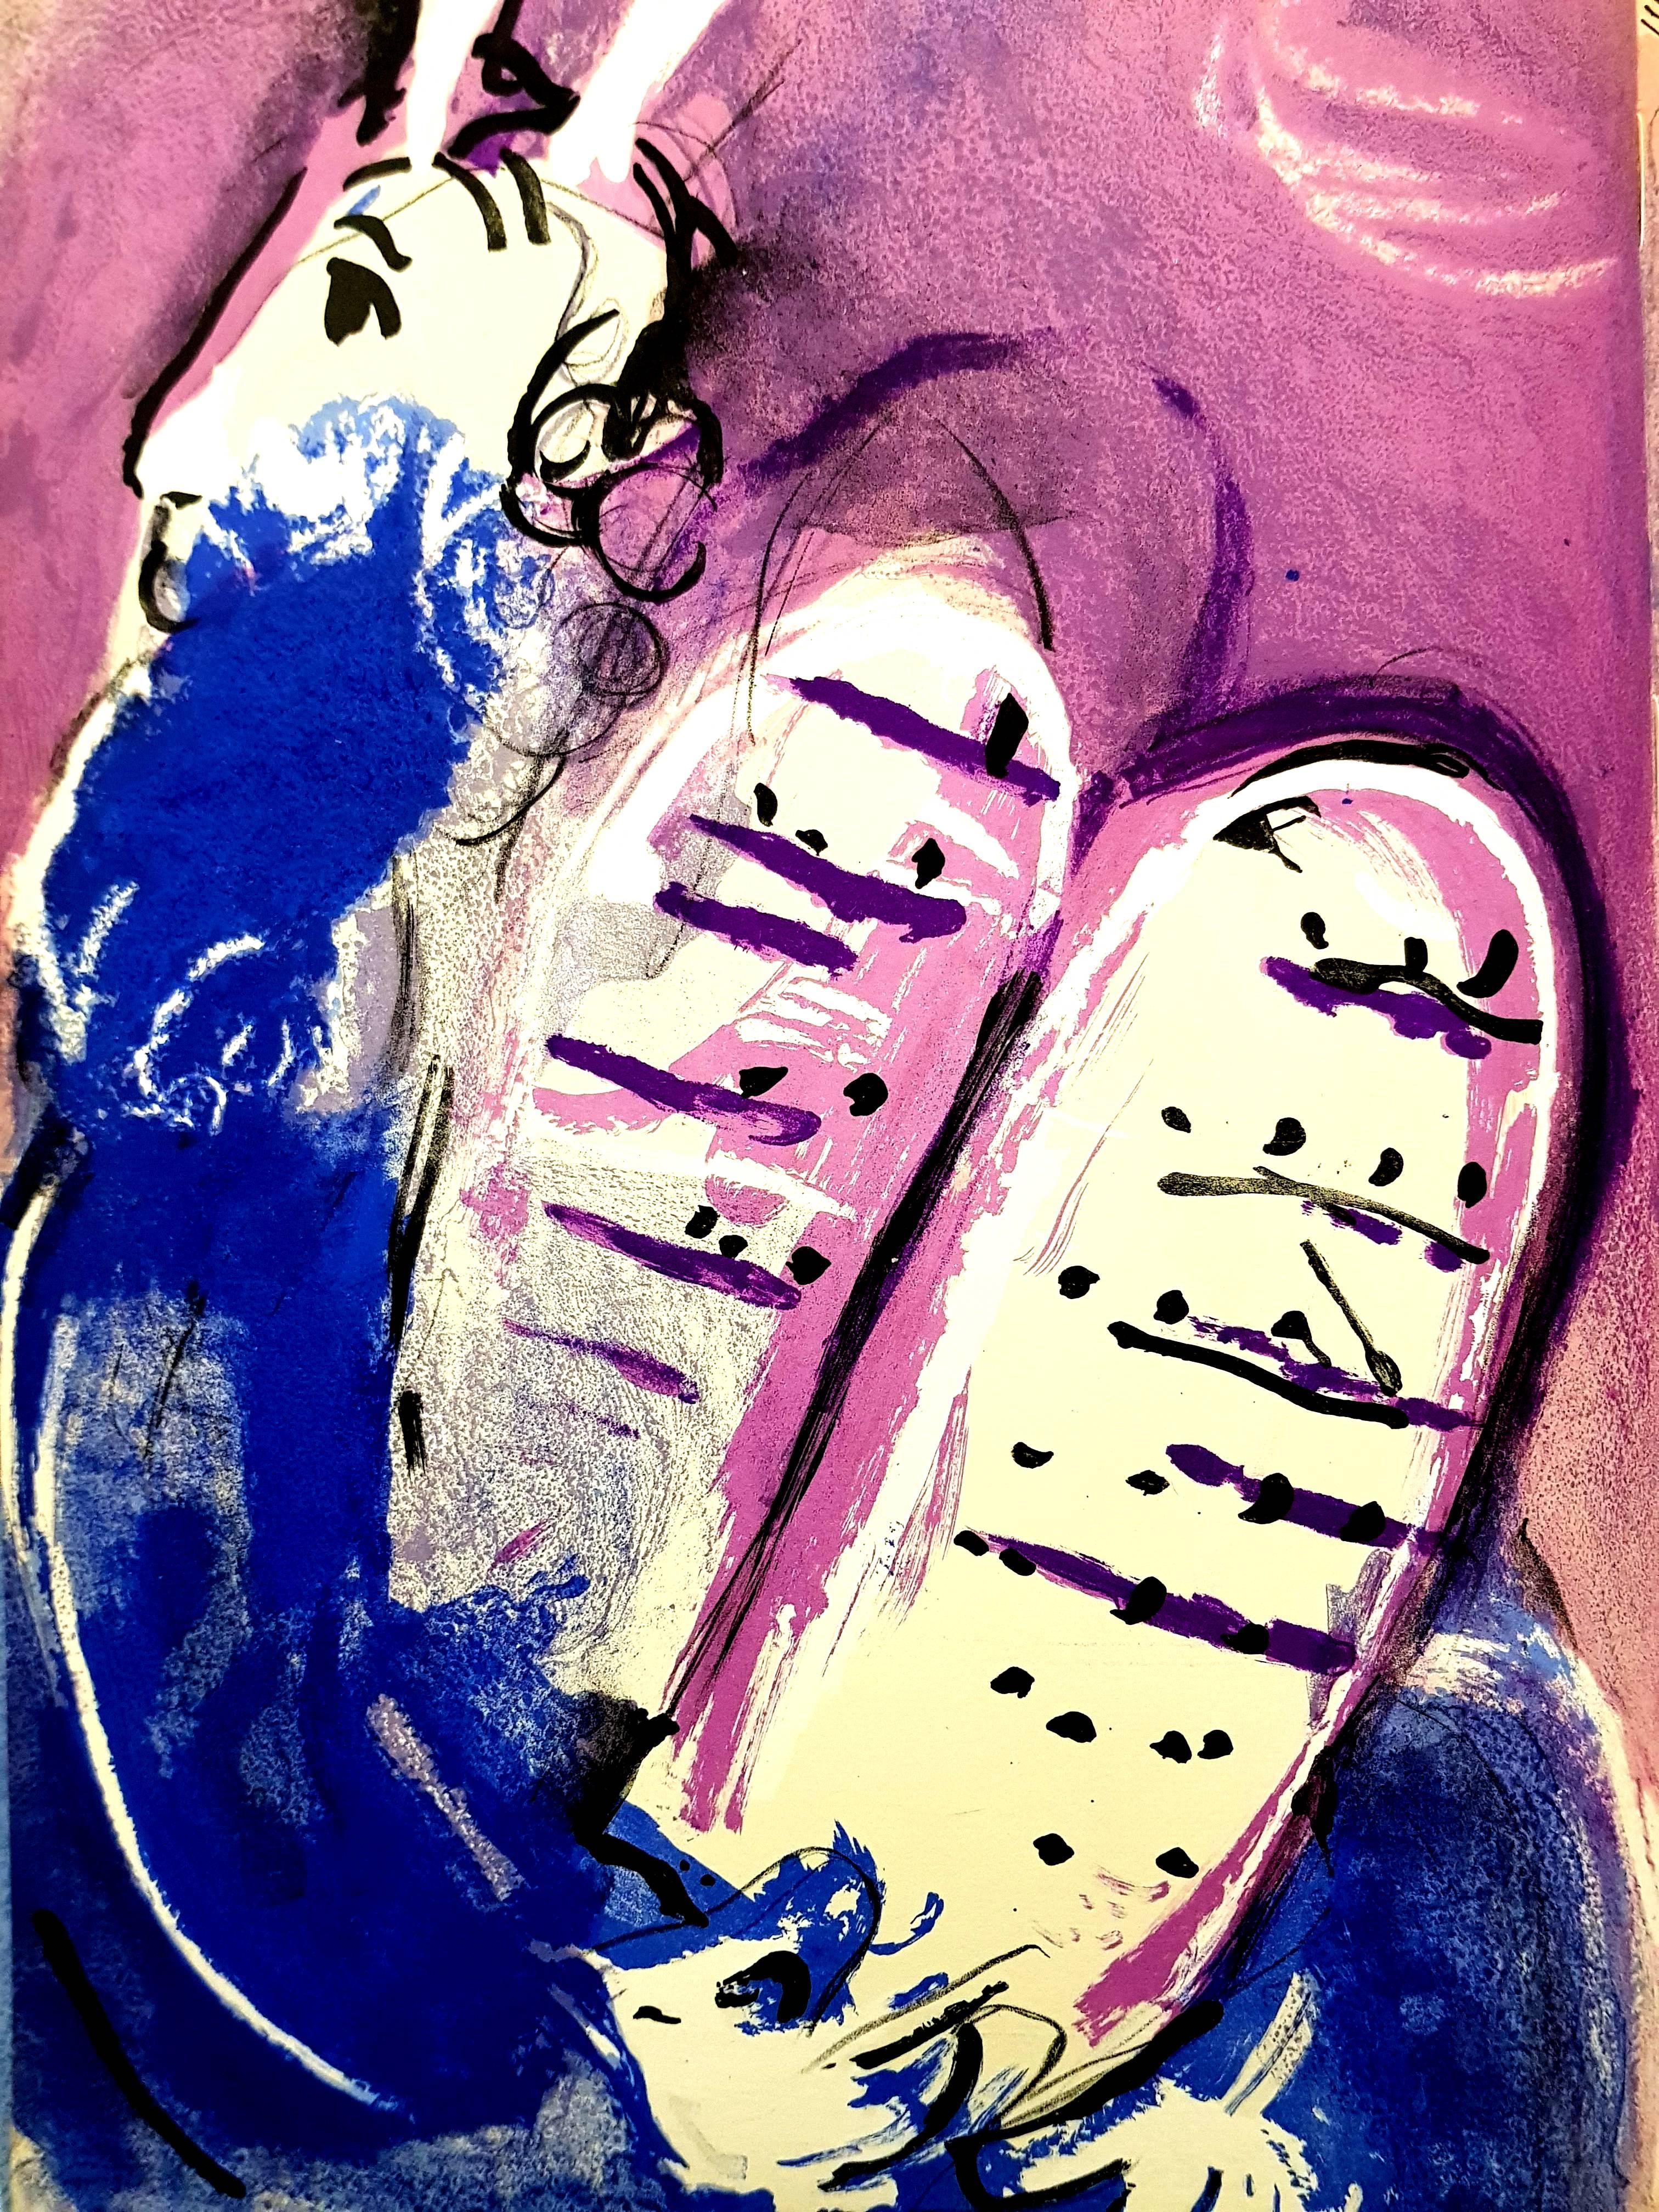 Marc Chagall, Original-Lithographie mit der Darstellung eines Augenblicks aus der Bibel.
Die Technik:	Originallithographie in Farben
Jahr:	1956
Größen:	35,5 x 26 cm / 14" x 10.2" (Blatt)
Veröffentlicht von:	Editionen der Verve-Reihe, Tériade,